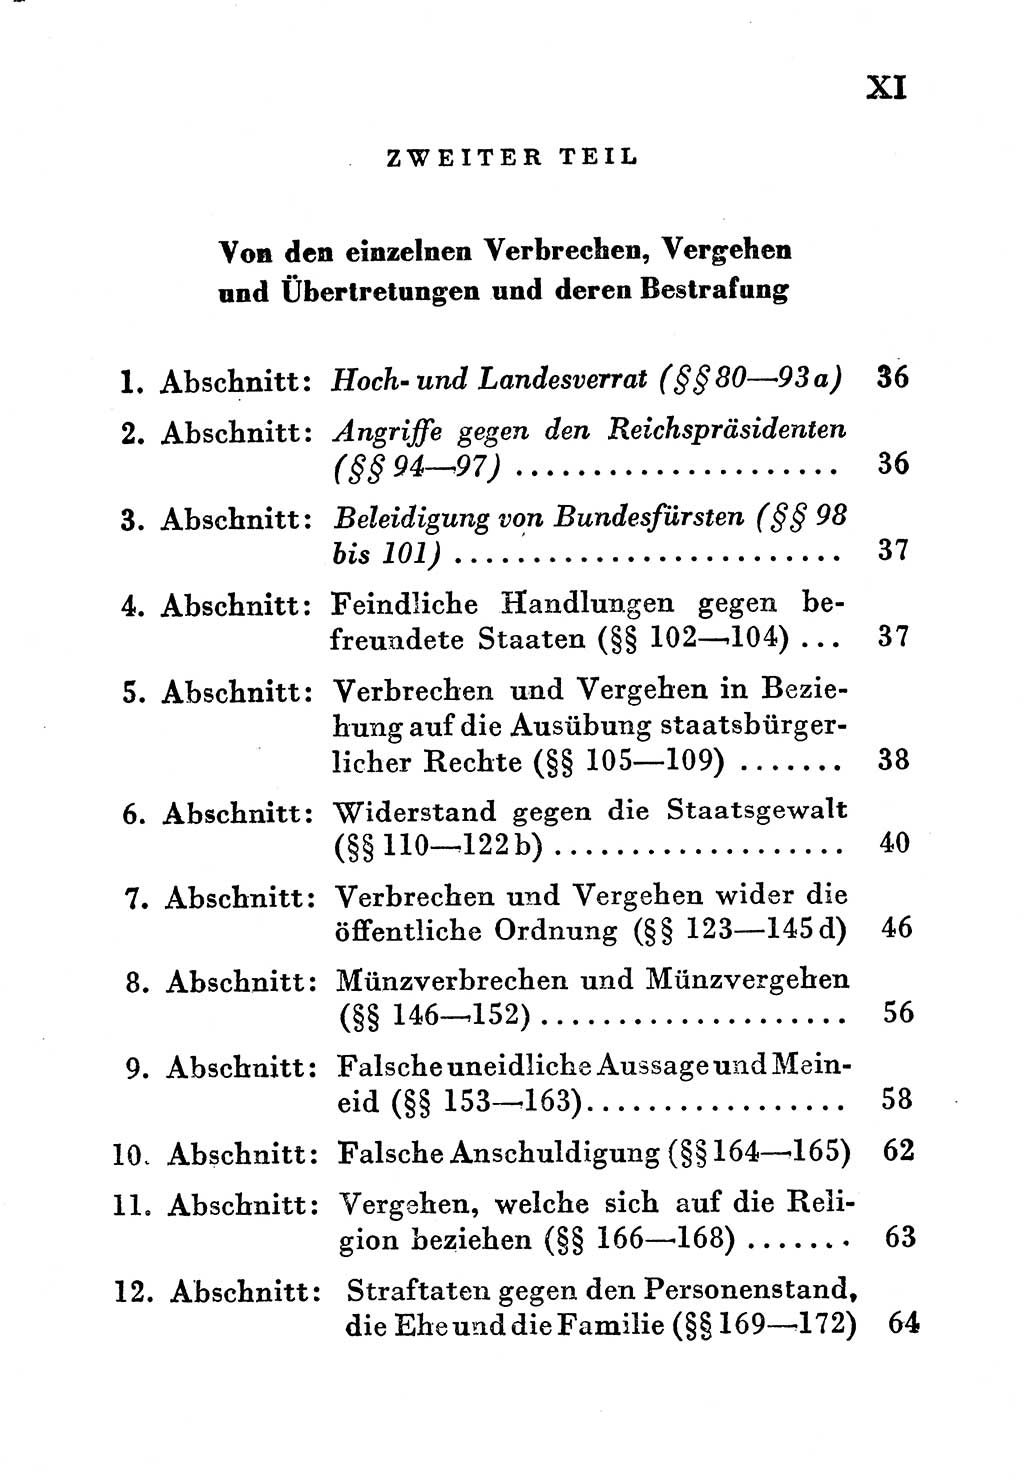 Einleitung Strafgesetzbuch (StGB) und andere Strafgesetze [Deutsche Demokratische Republik (DDR)] 1956, Seite 11 (Einl. StGB Strafges. DDR 1956, S. 11)